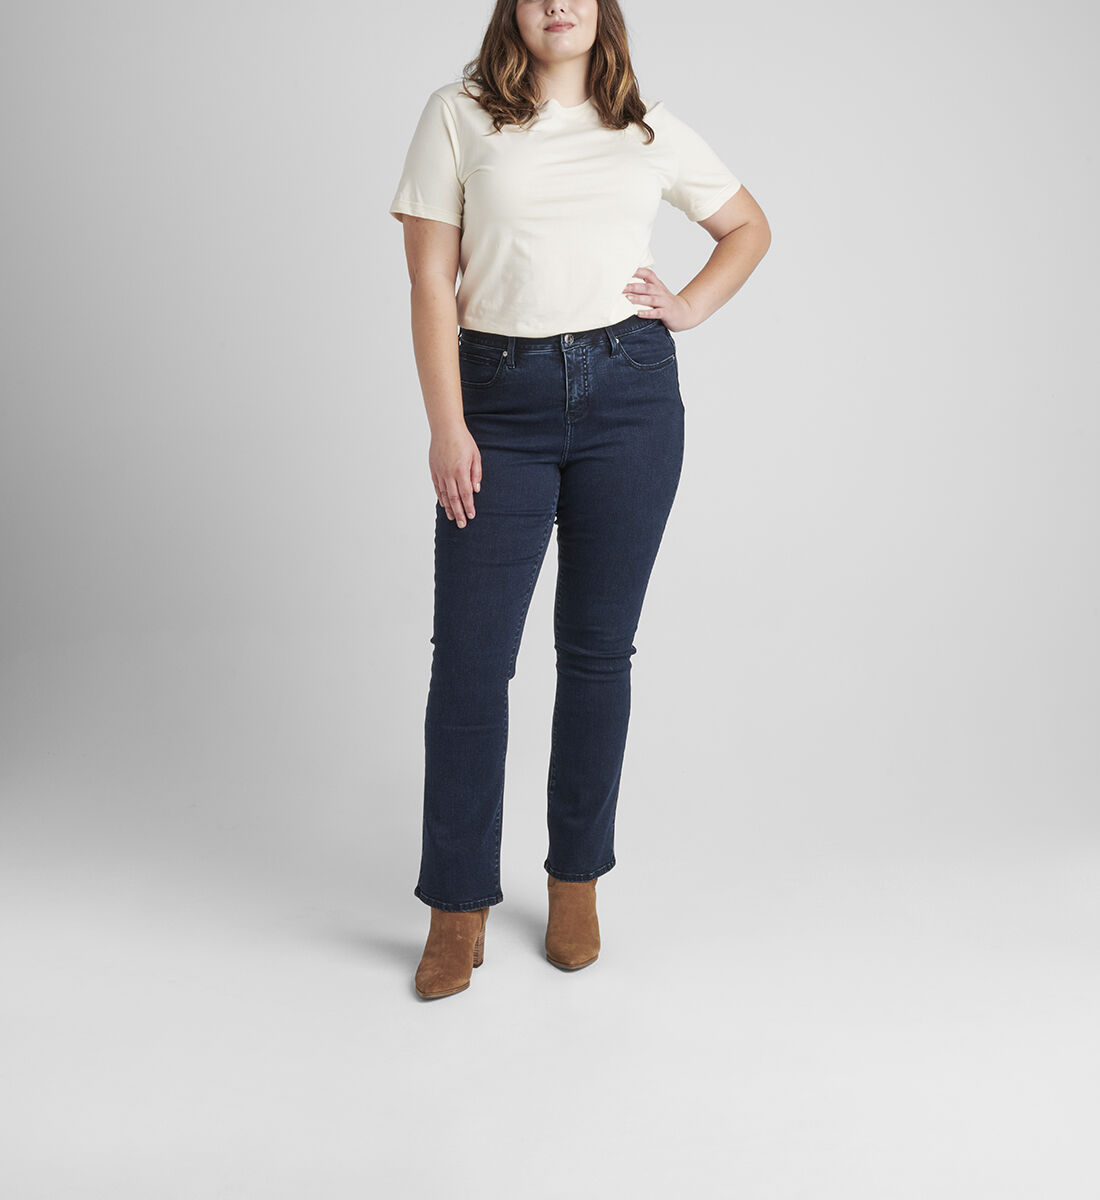 Eloise Mid Rise Bootcut Jeans Plus Size Front